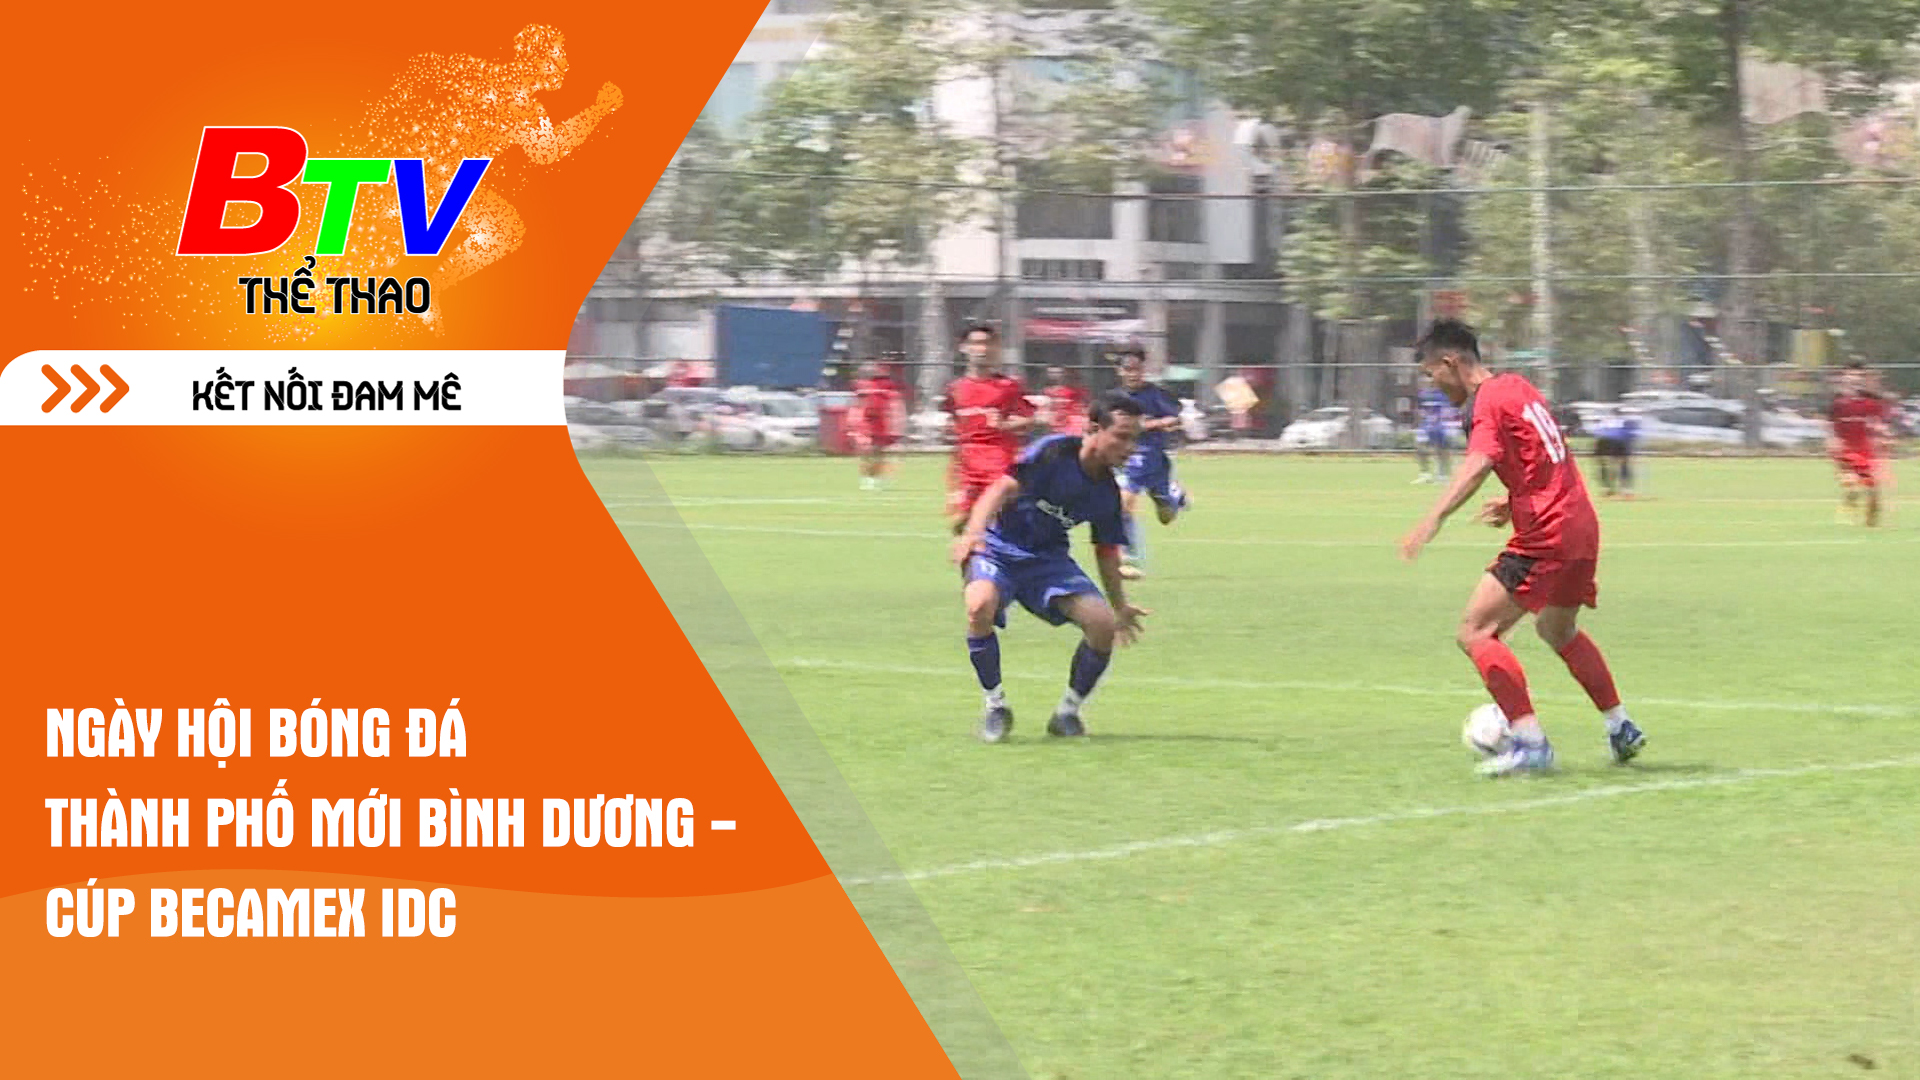 Ngày hội bóng đá Thành phố mới Bình Dương - Cúp Becamex IDC | Tin Thể thao 24h